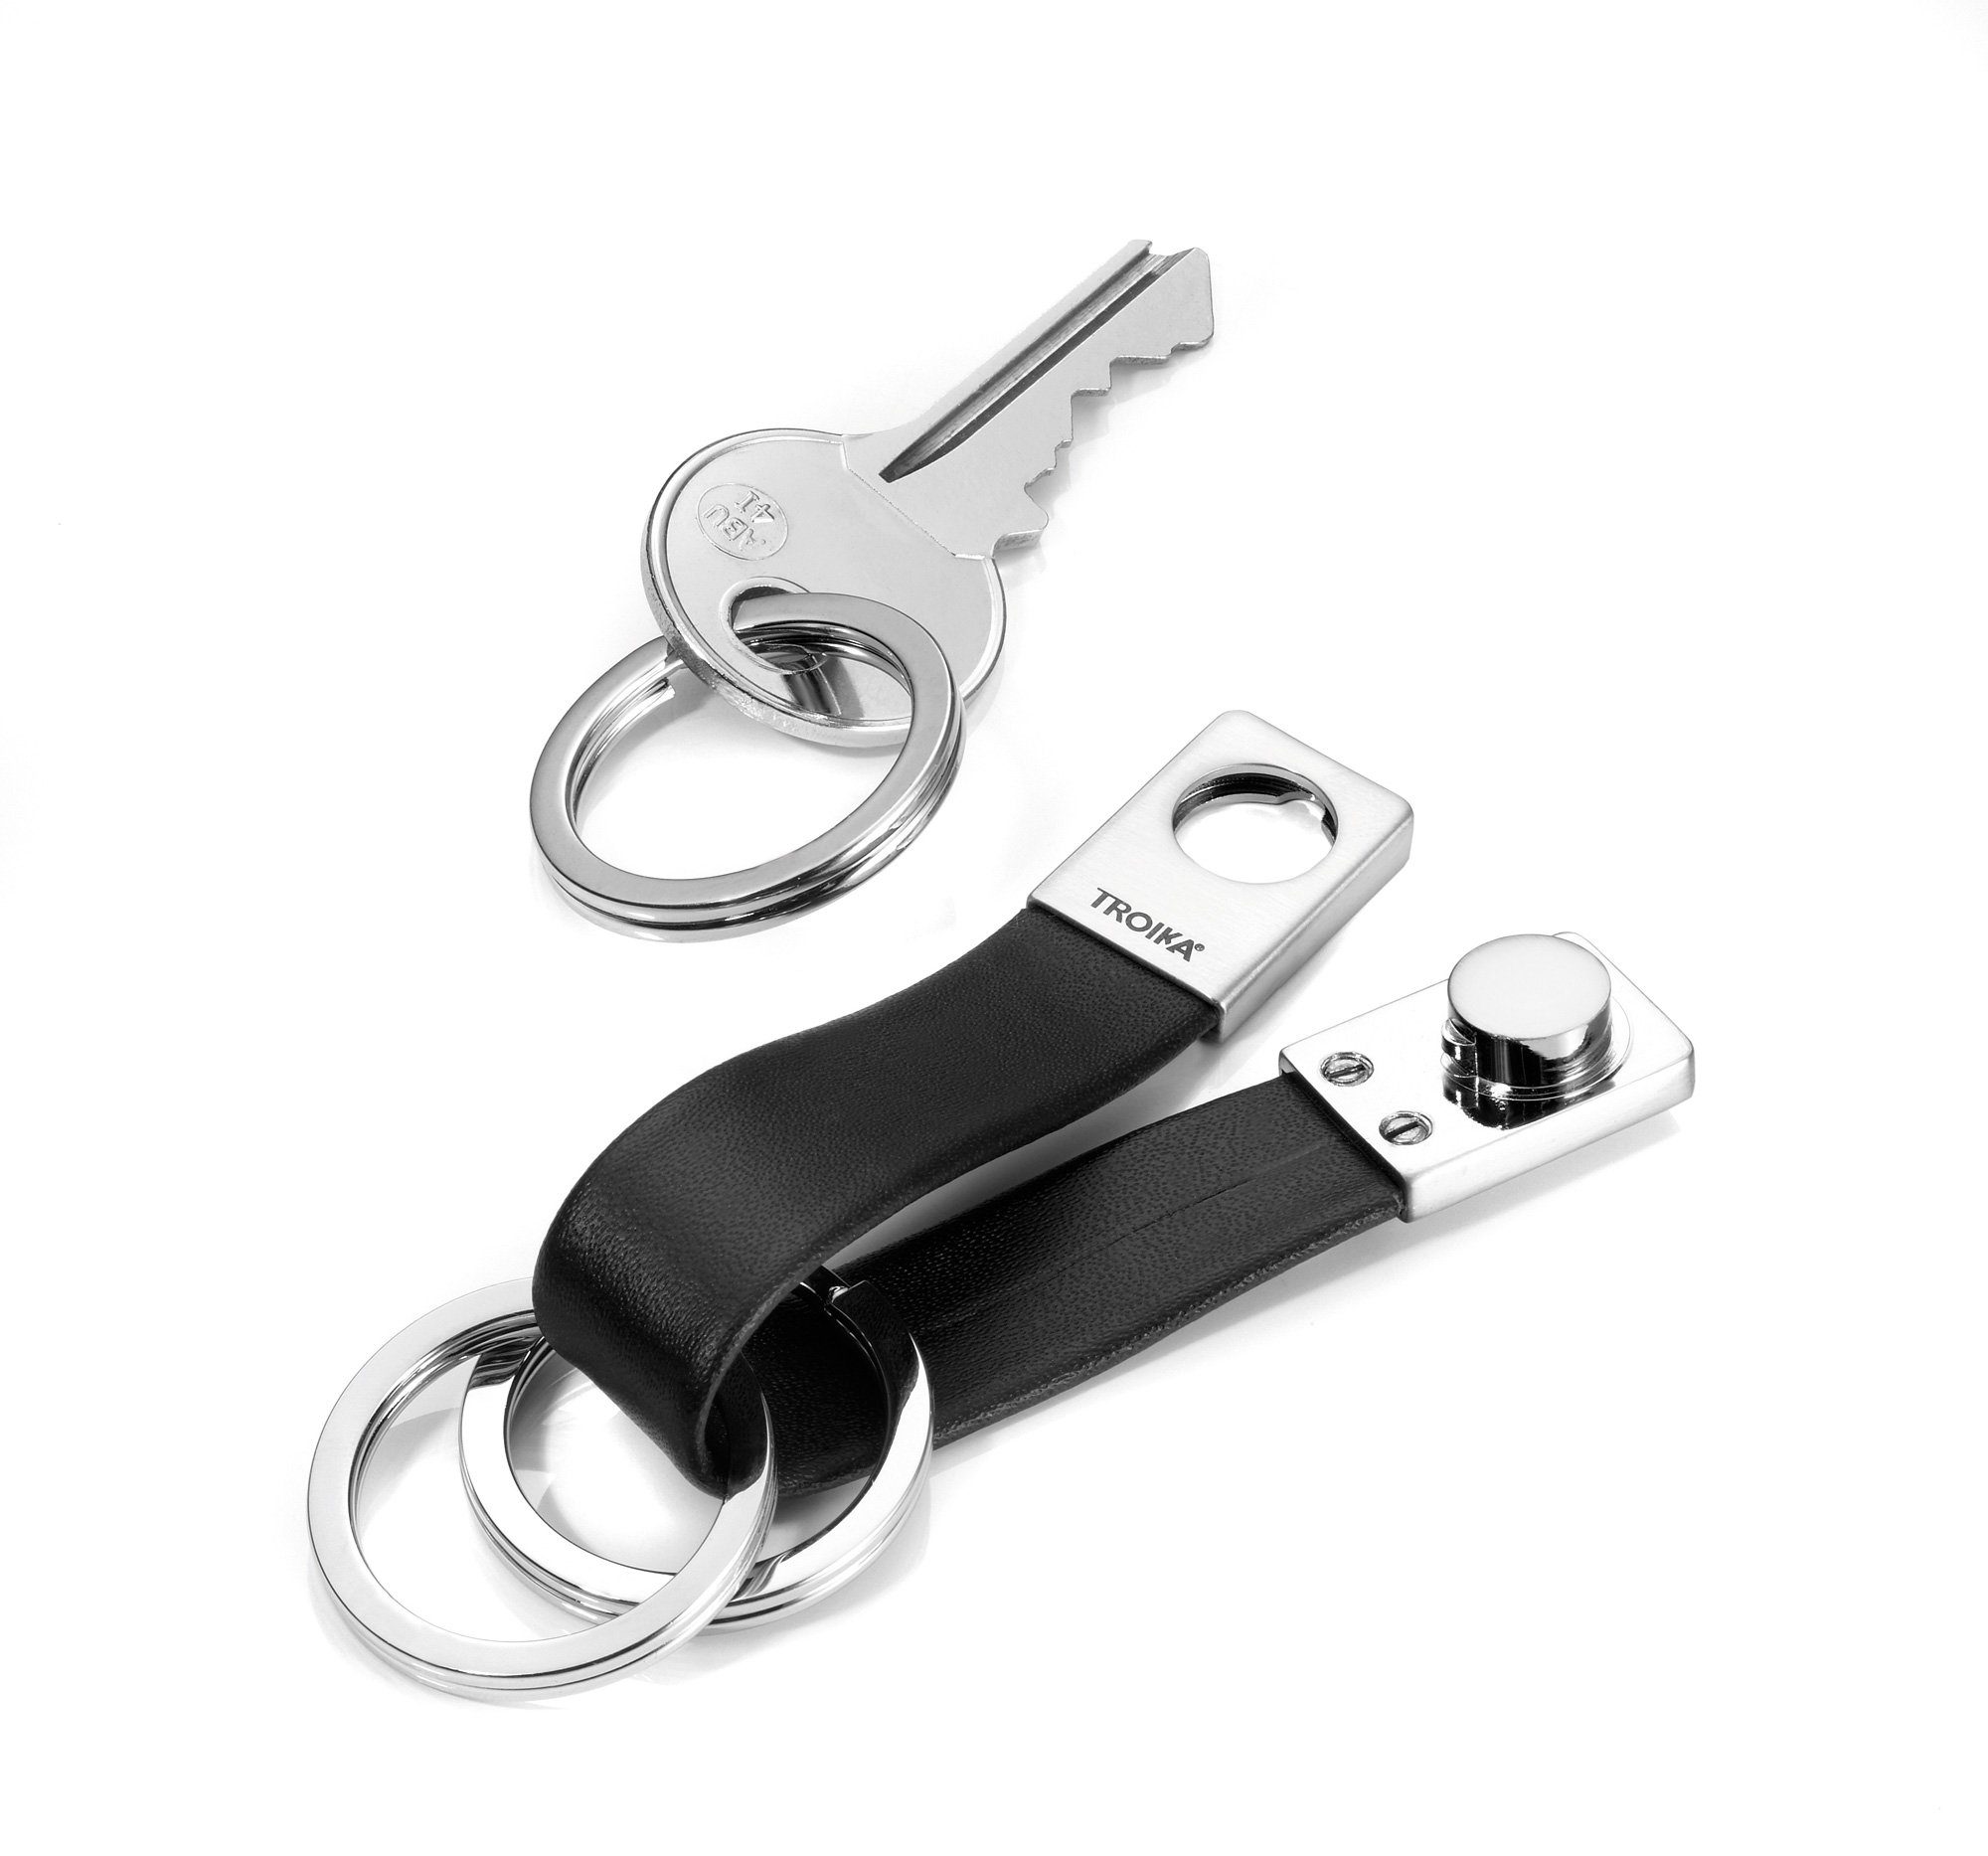 TROIKA Schlüsselanhänger TROIKA TWISTER SCHLÜSSELHALTER - KRG649/LE -  Lederschlaufe, braun - schwarzes Leder/Metall - Schlüsselanhänger mit 3  Schlüsselringen - praktischer Twist-Verschluss